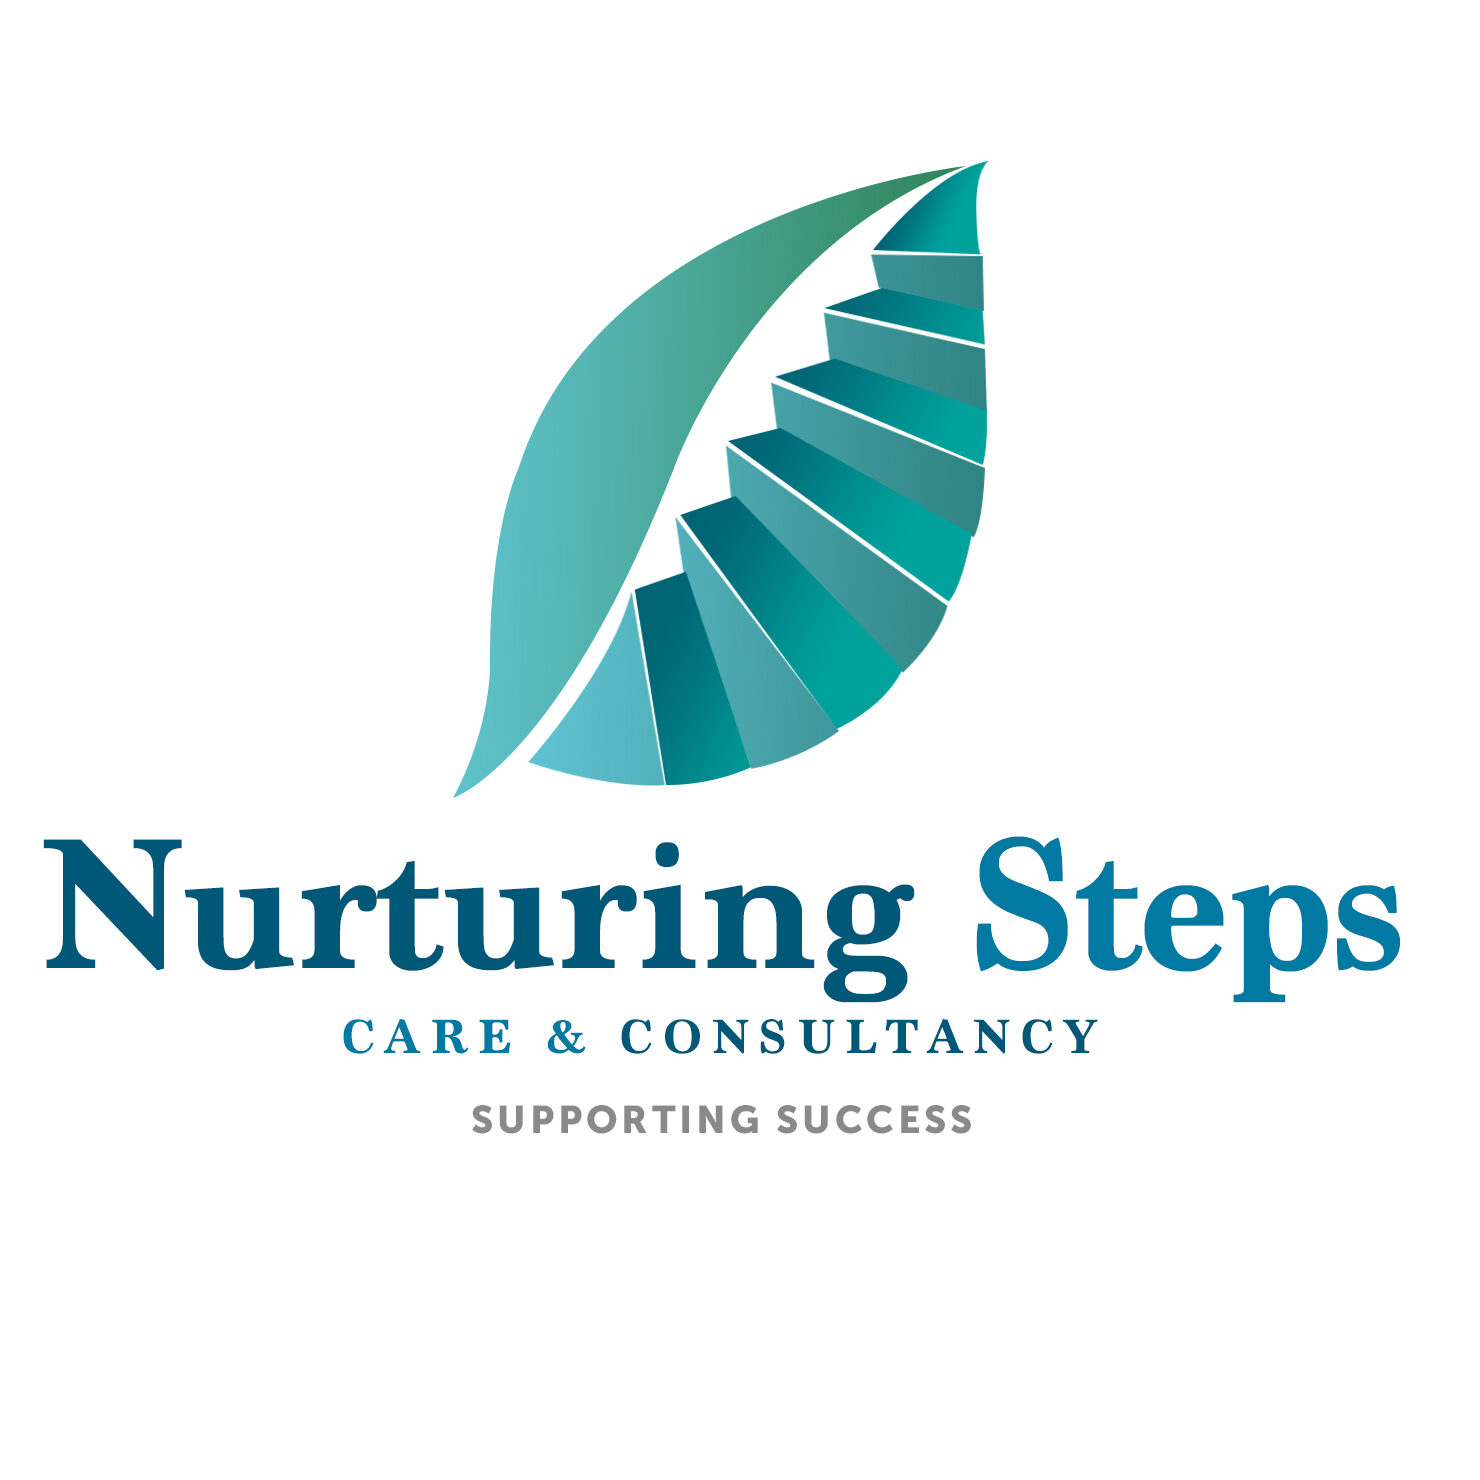 Nurturing steps